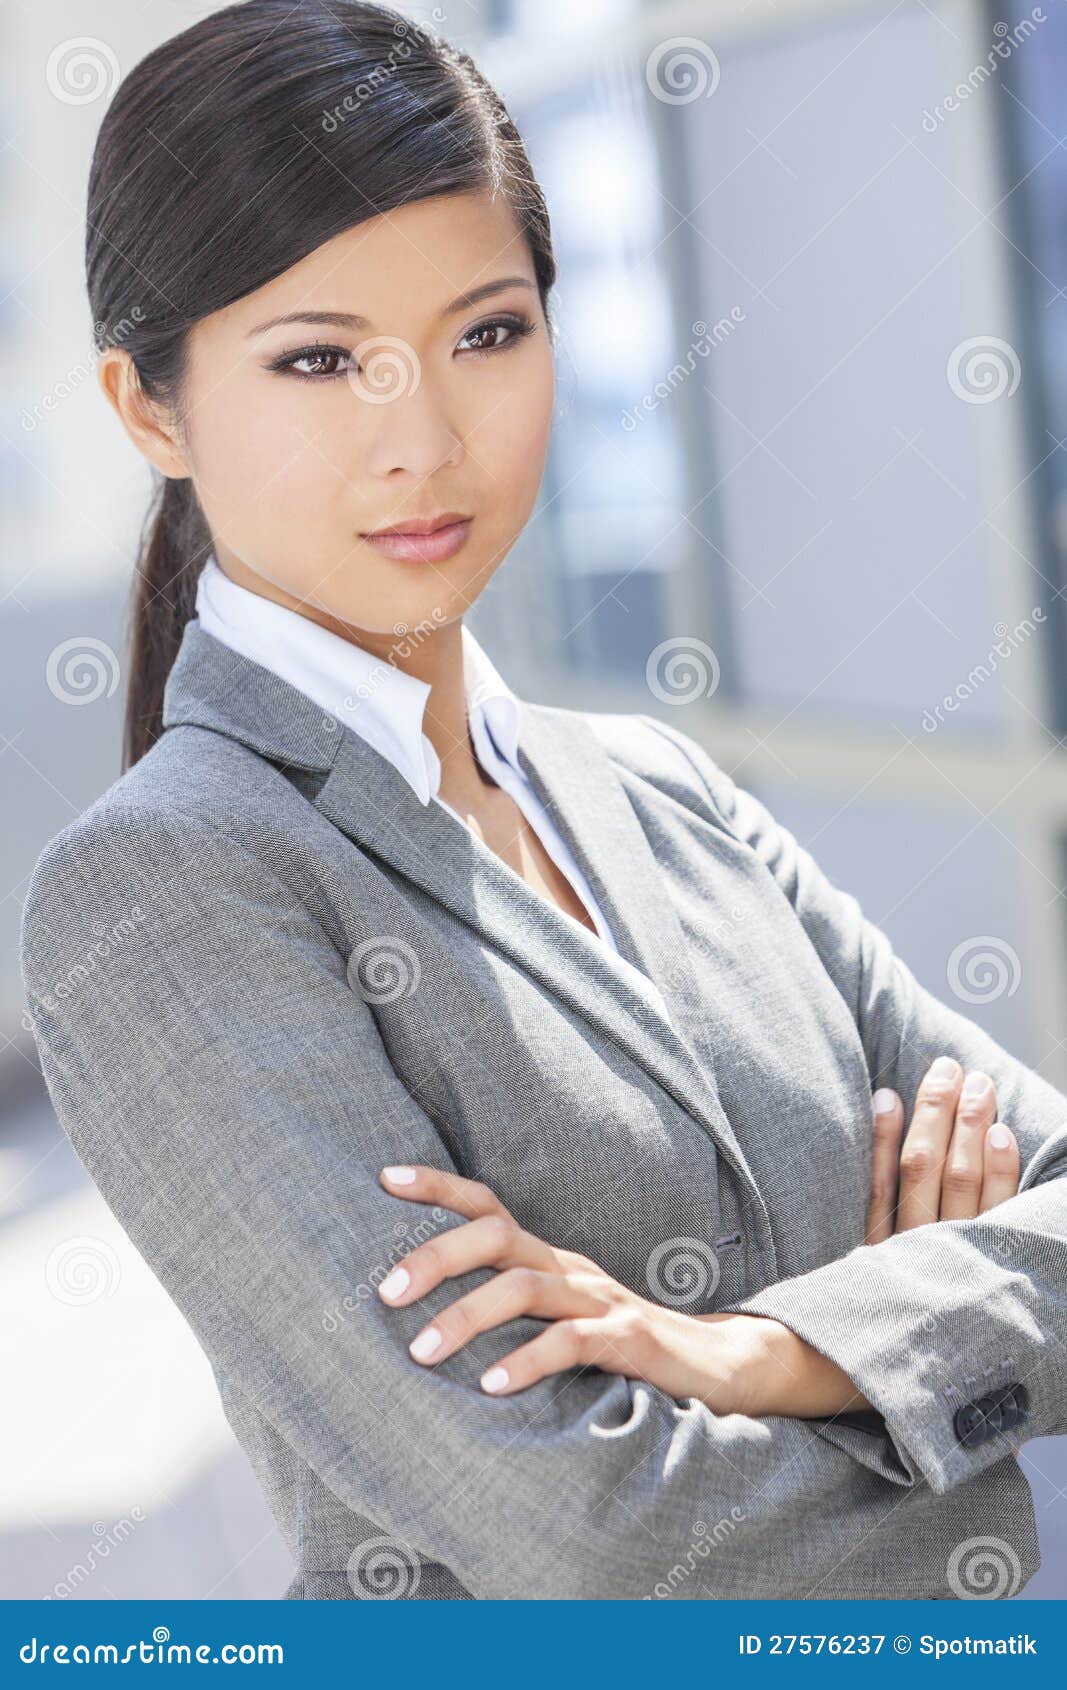 Schone Asiatische Chinesische Frau Oder Geschaftsfrau Stockbild Bild Von Chinesische Asiatische 27576237